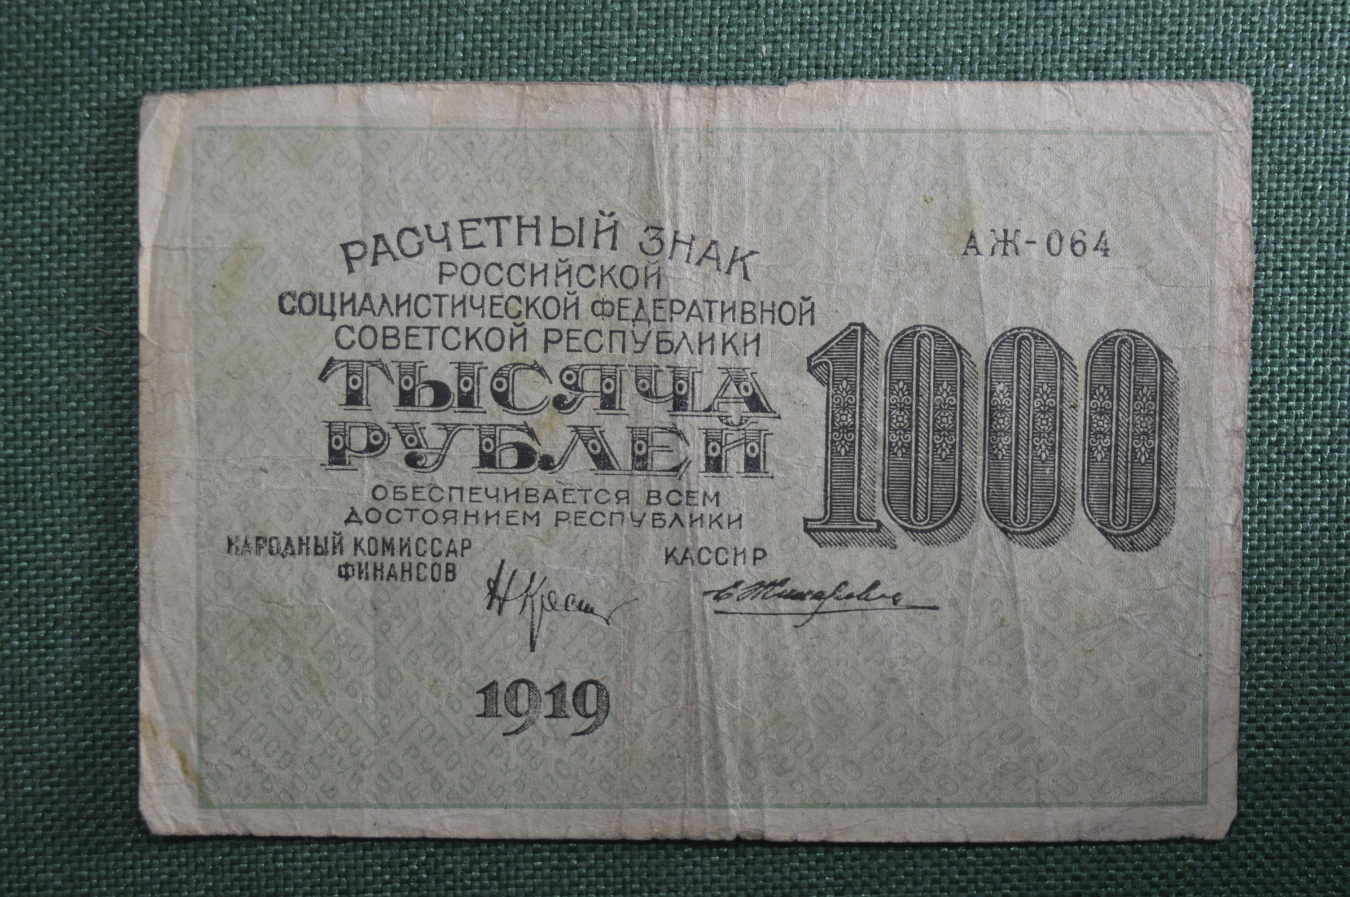 60 тысяч рублей в сумах. Банкнота 1000 рублей 1919. Тысяча рублей 1919 года. Банкнота 1000 рублей 1919 года. Водяной знак банкнот 1919 года.